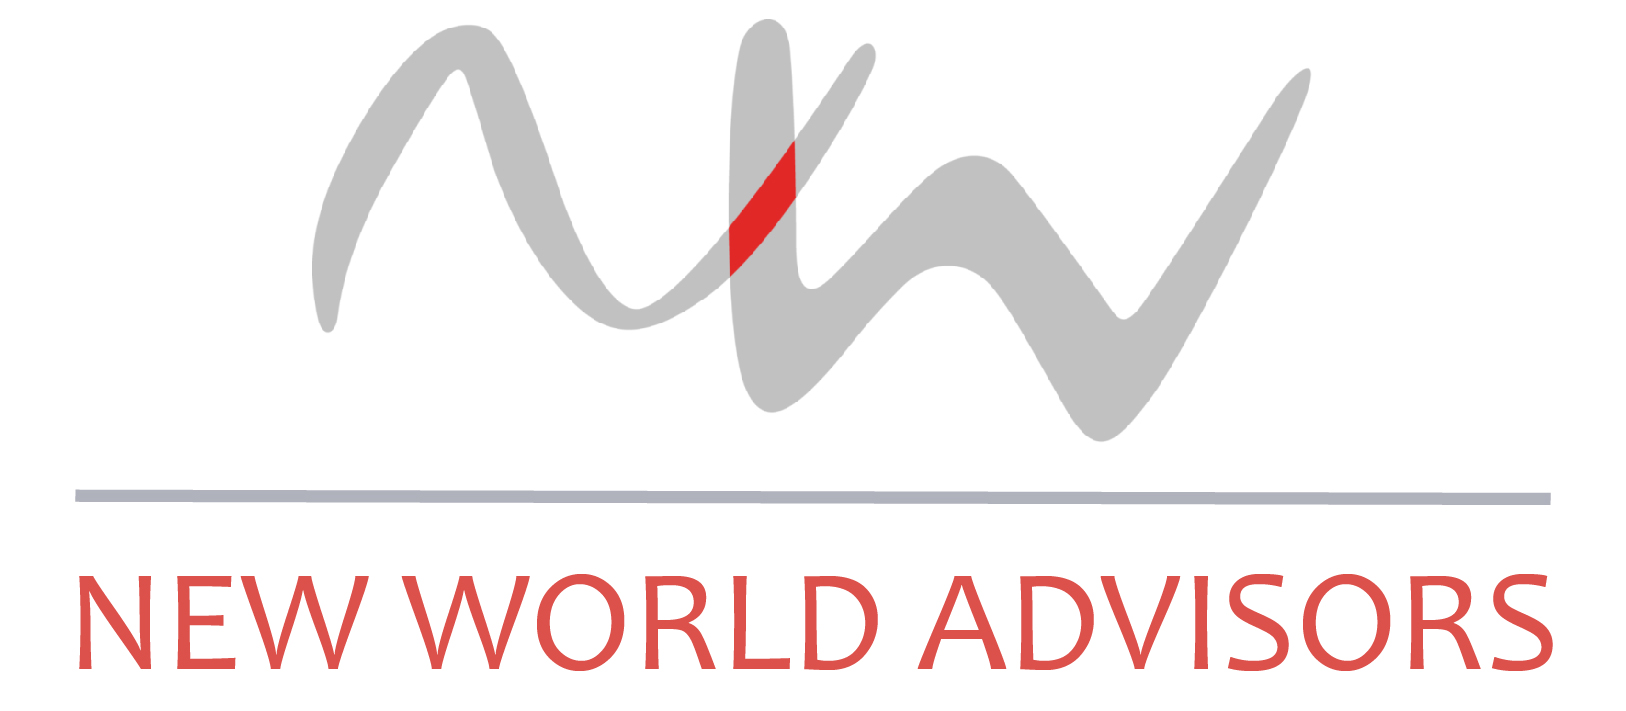 New World Advisors Logo - Current.jpg